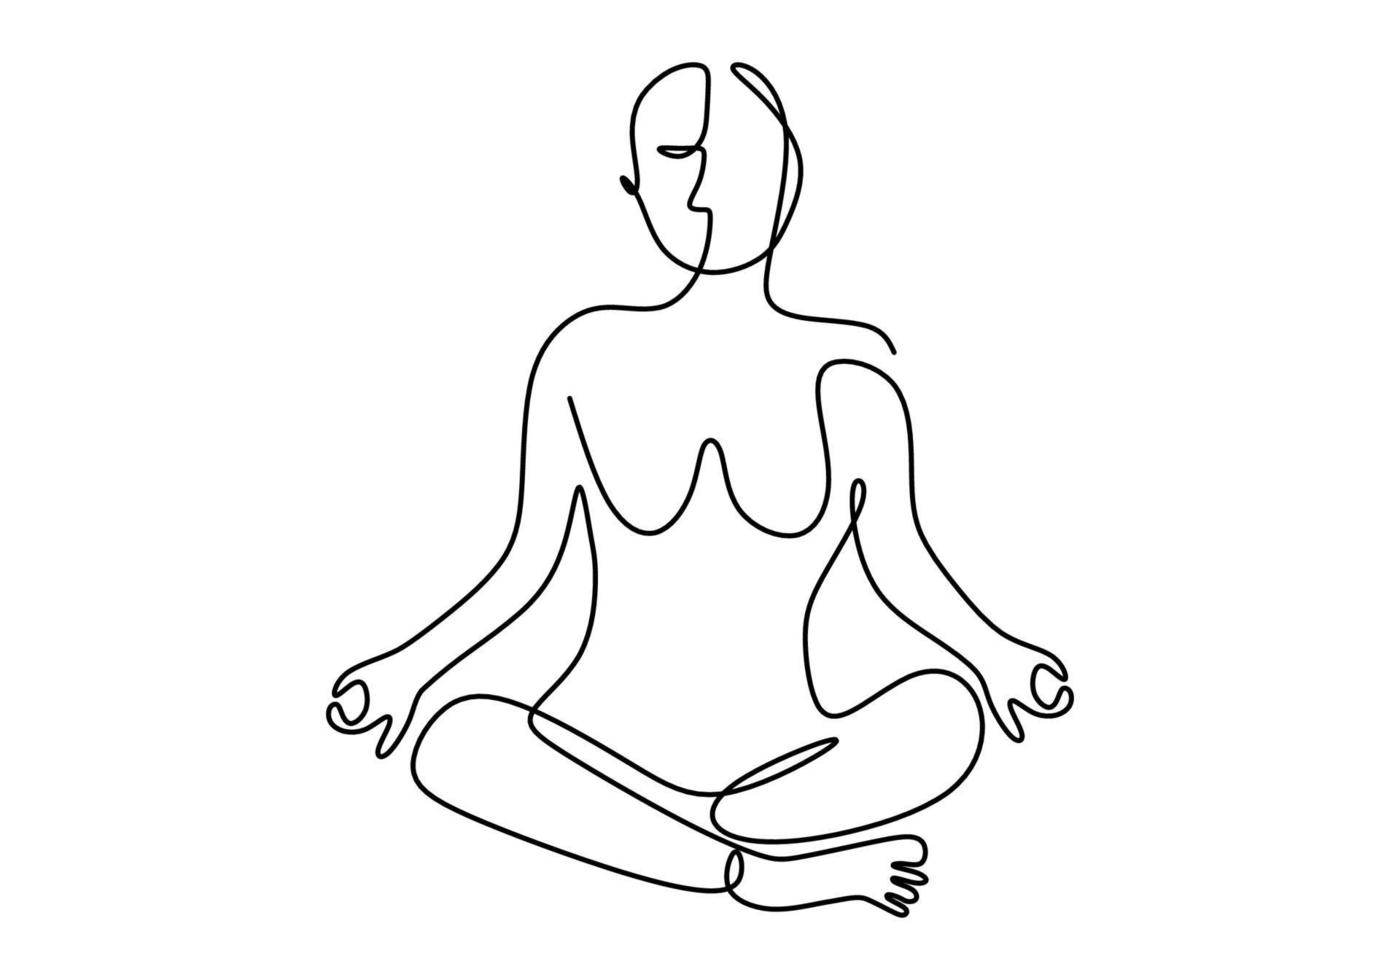 continuo un disegno a tratteggio della donna che fa esercizio in posa yoga. giovane ragazza in buona salute seduta attraversando la gamba con la posa del loto yoga. vettore